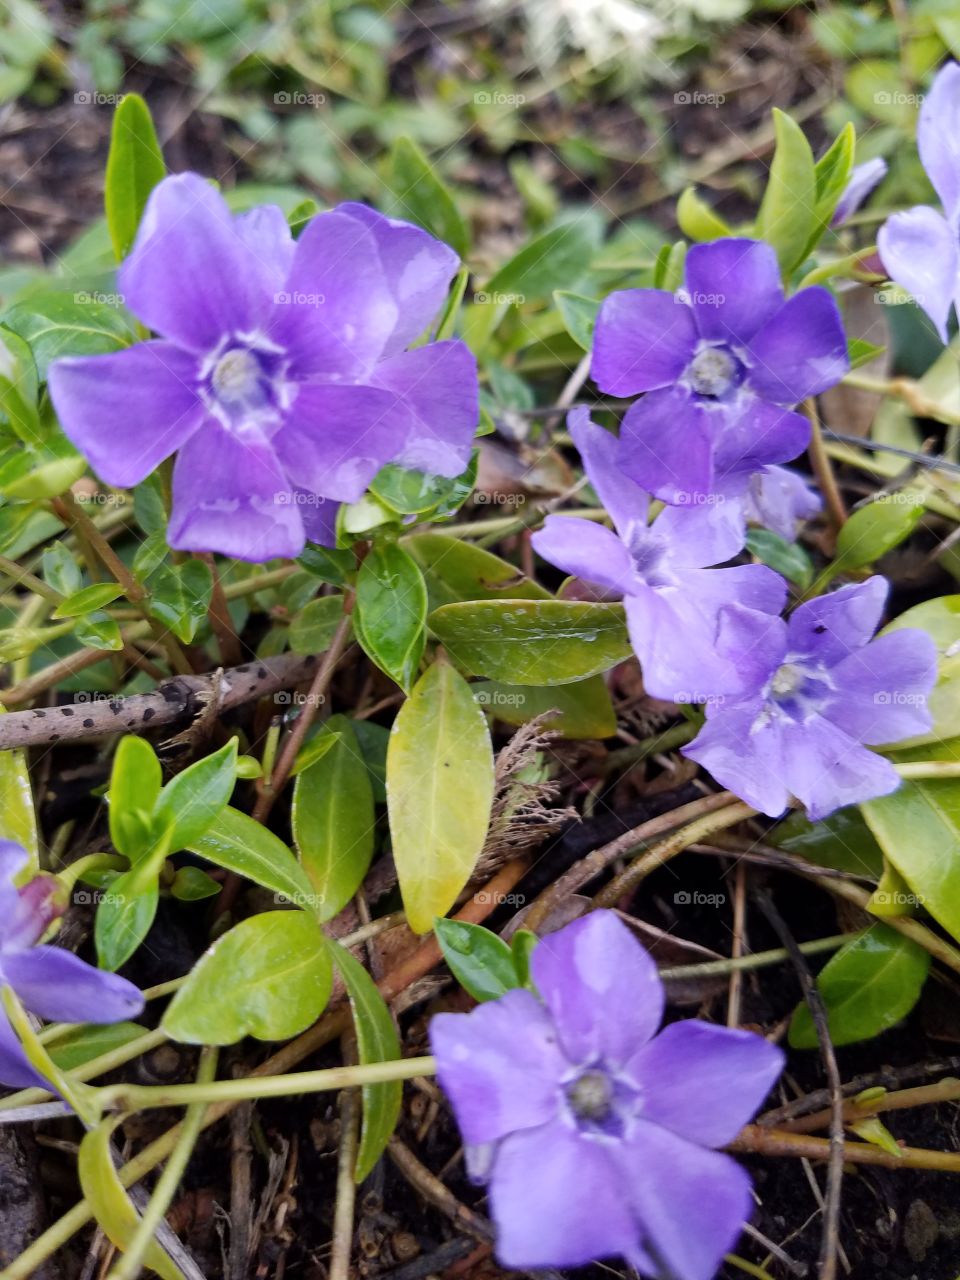 Pretty purple flowers.